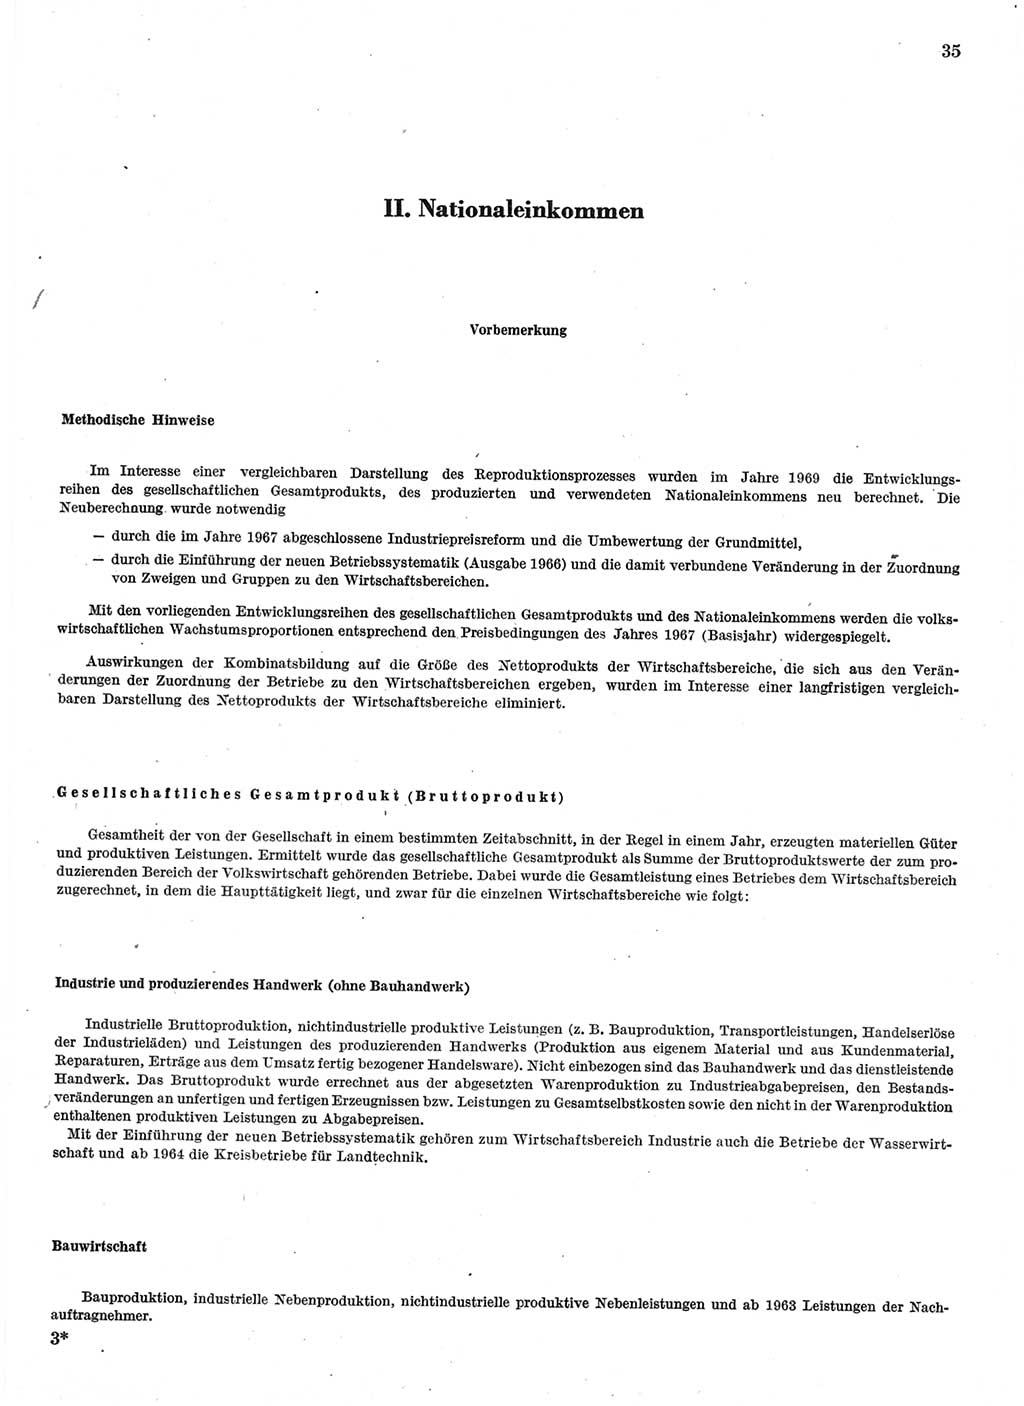 Statistisches Jahrbuch der Deutschen Demokratischen Republik (DDR) 1970, Seite 35 (Stat. Jb. DDR 1970, S. 35)